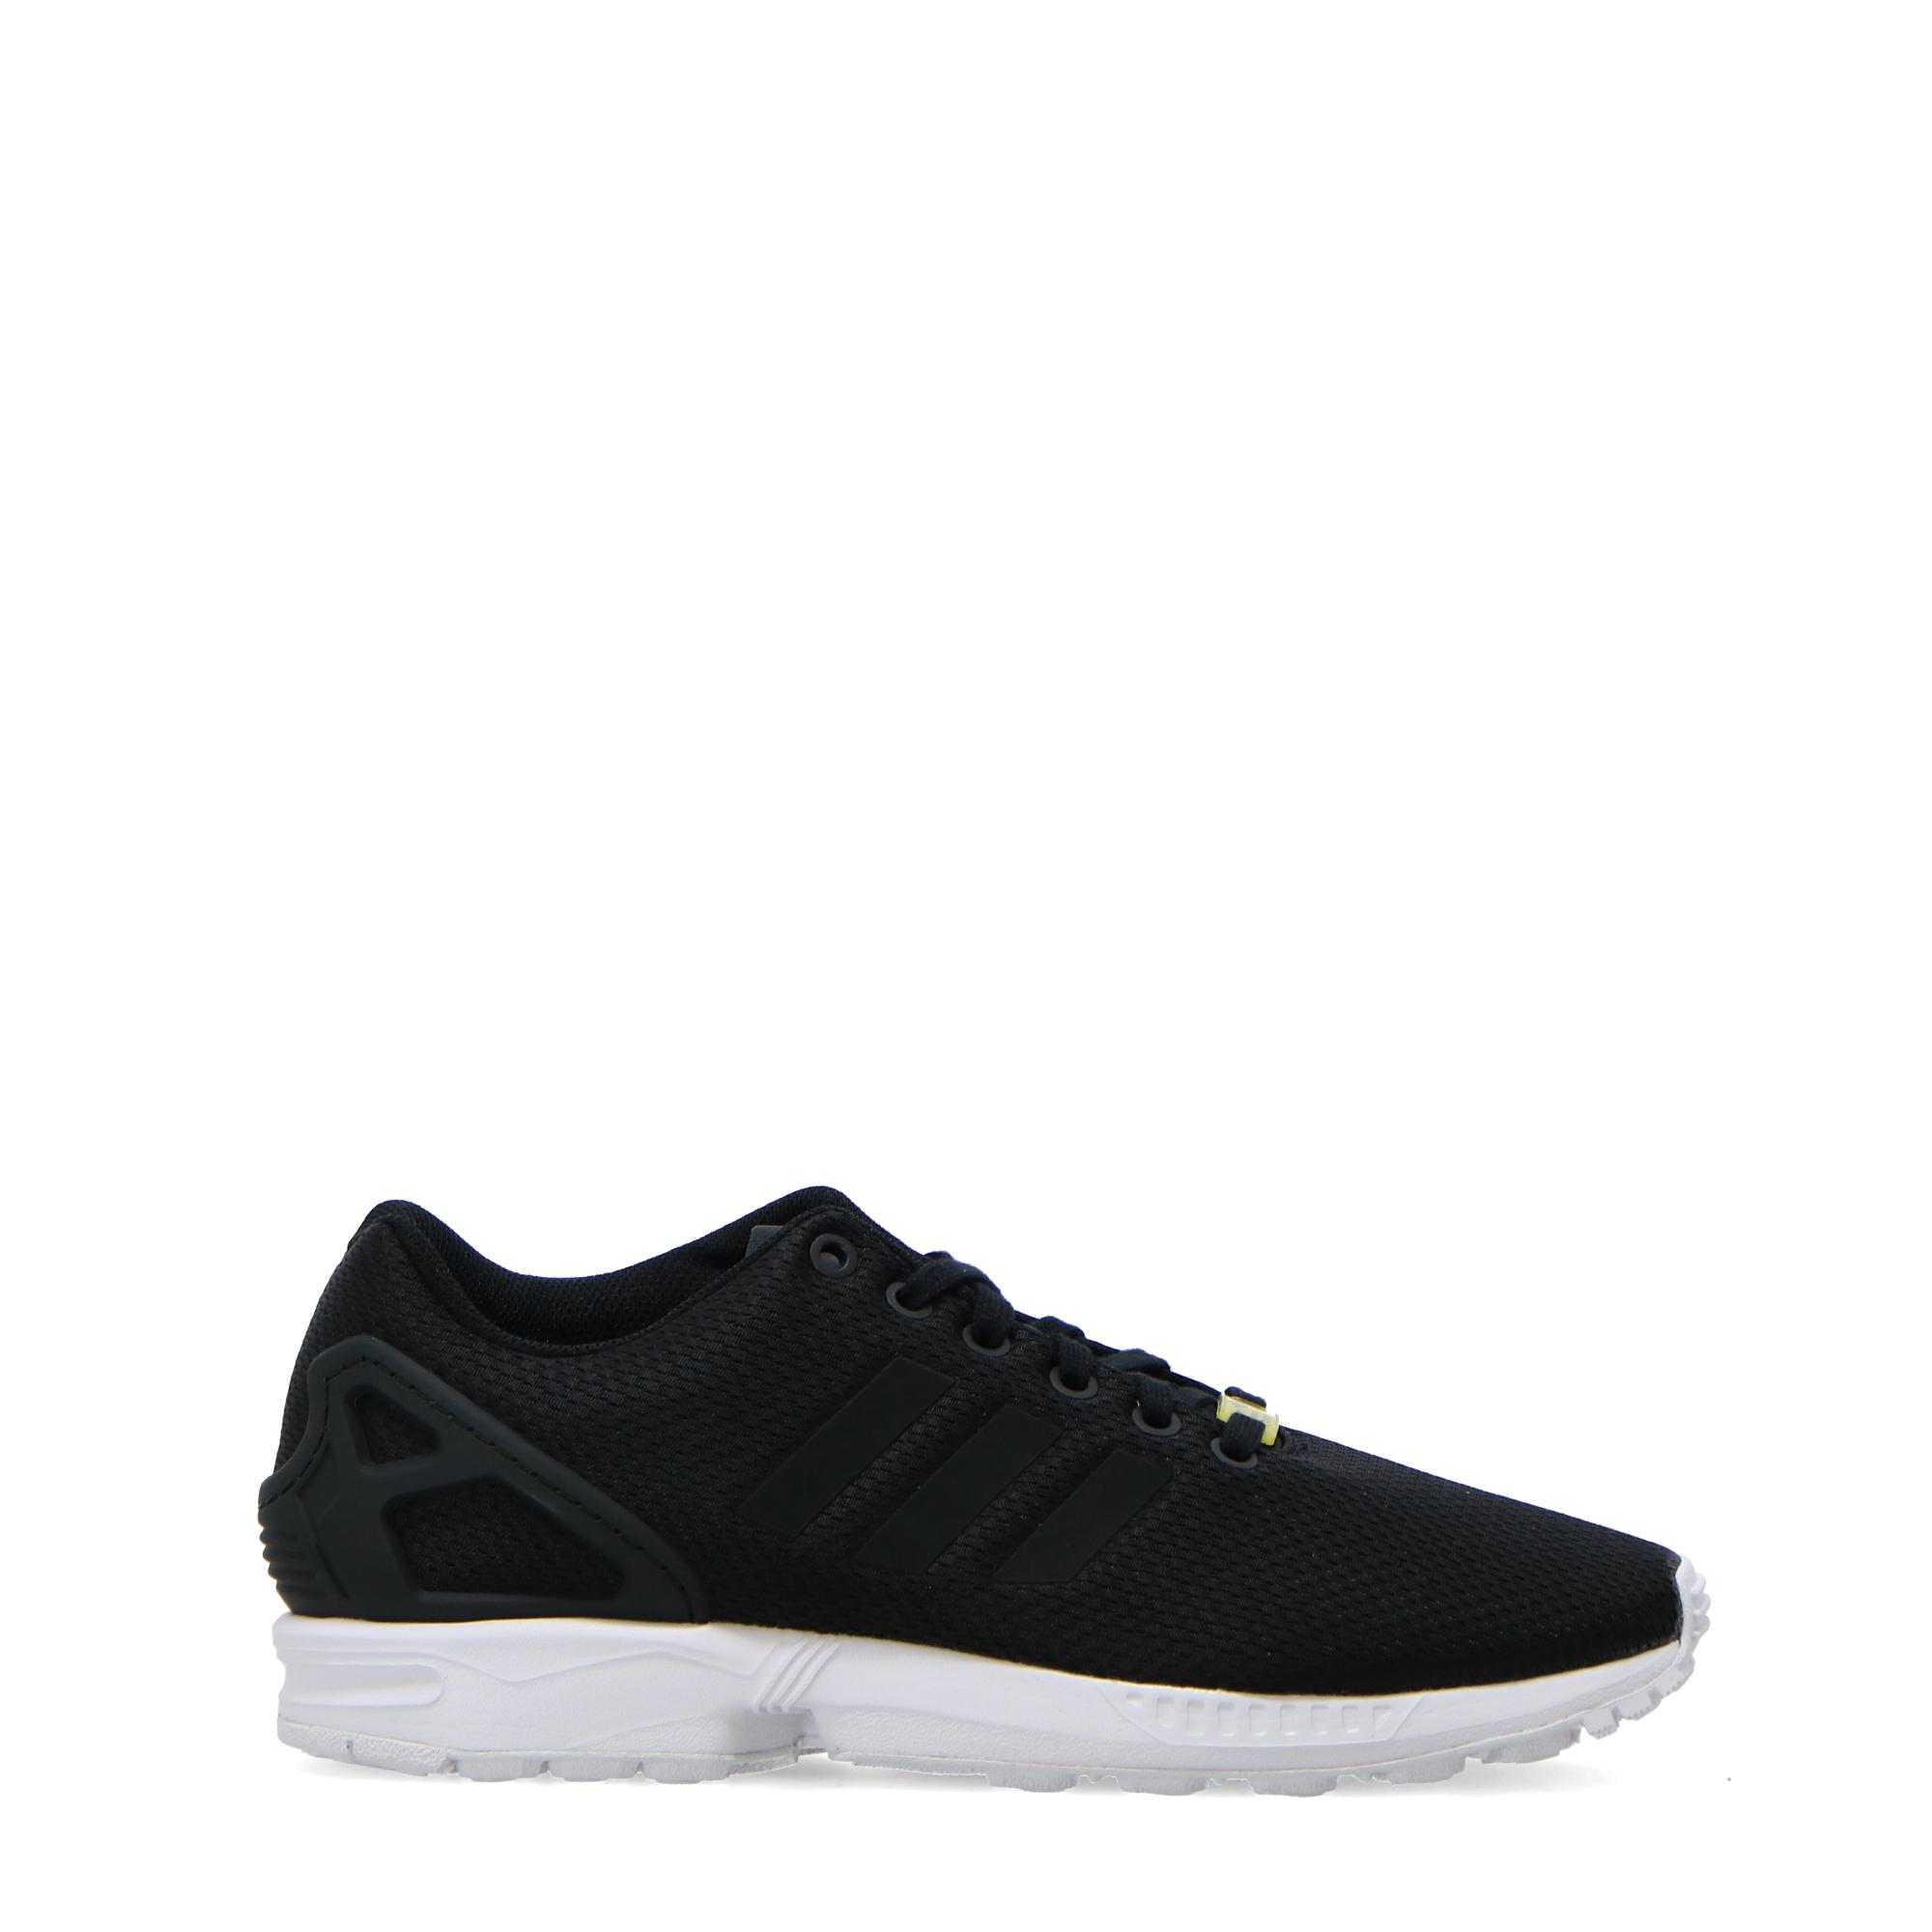 adidas shoes zx flux black